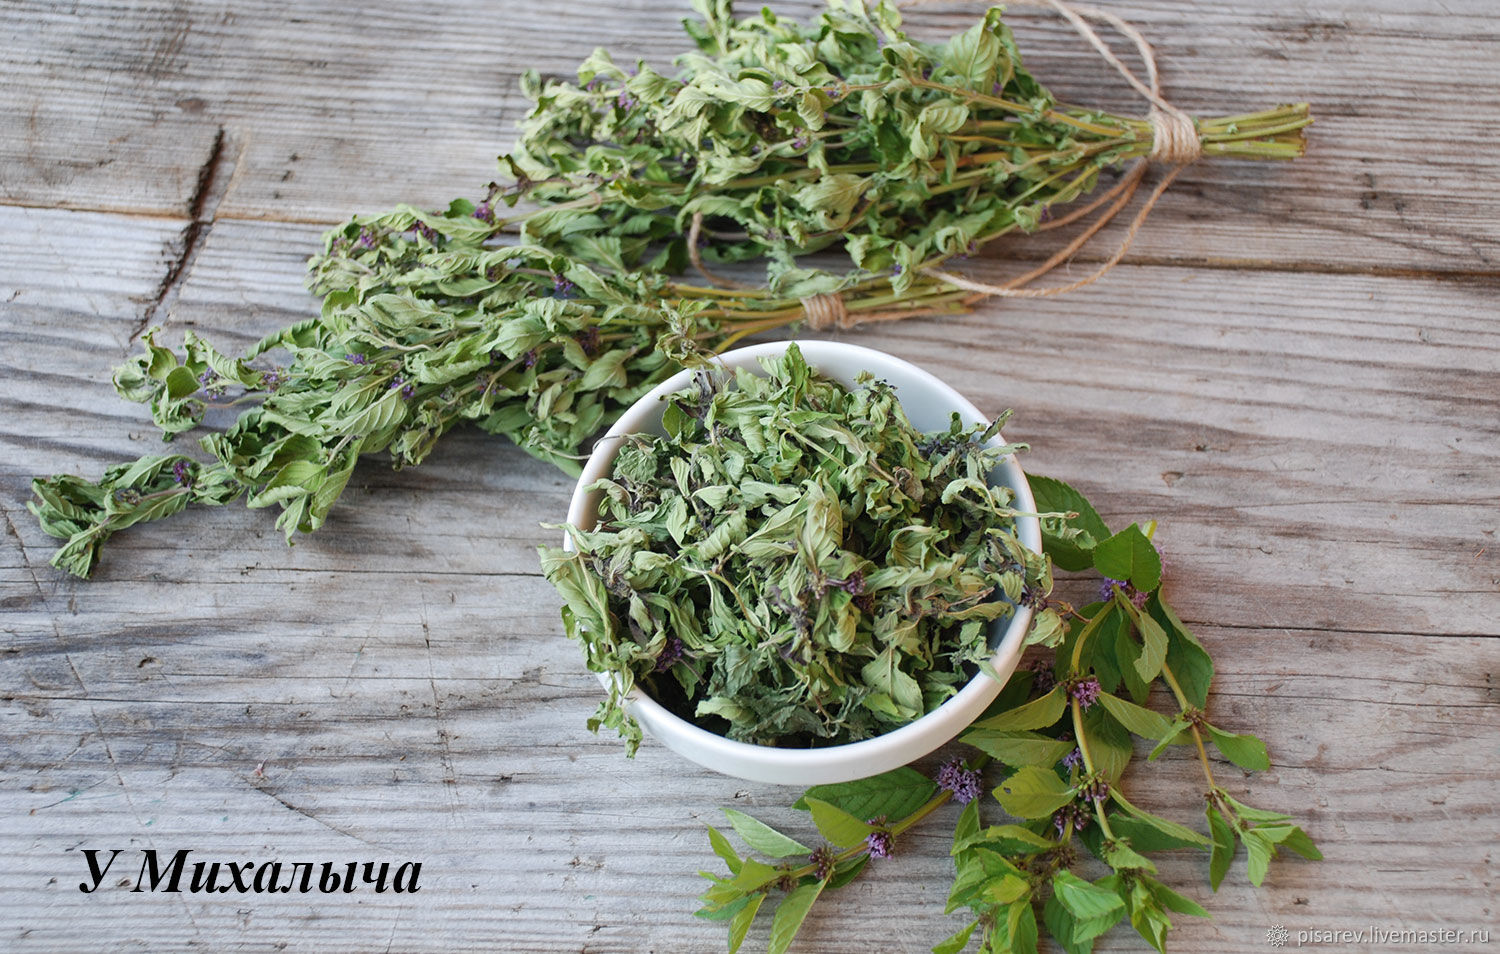 Когда заготавливать листья смородины и малины для чая: как нужно правильно сушить на воздухе, сушка в электросушилке и хранение сушеного сбора